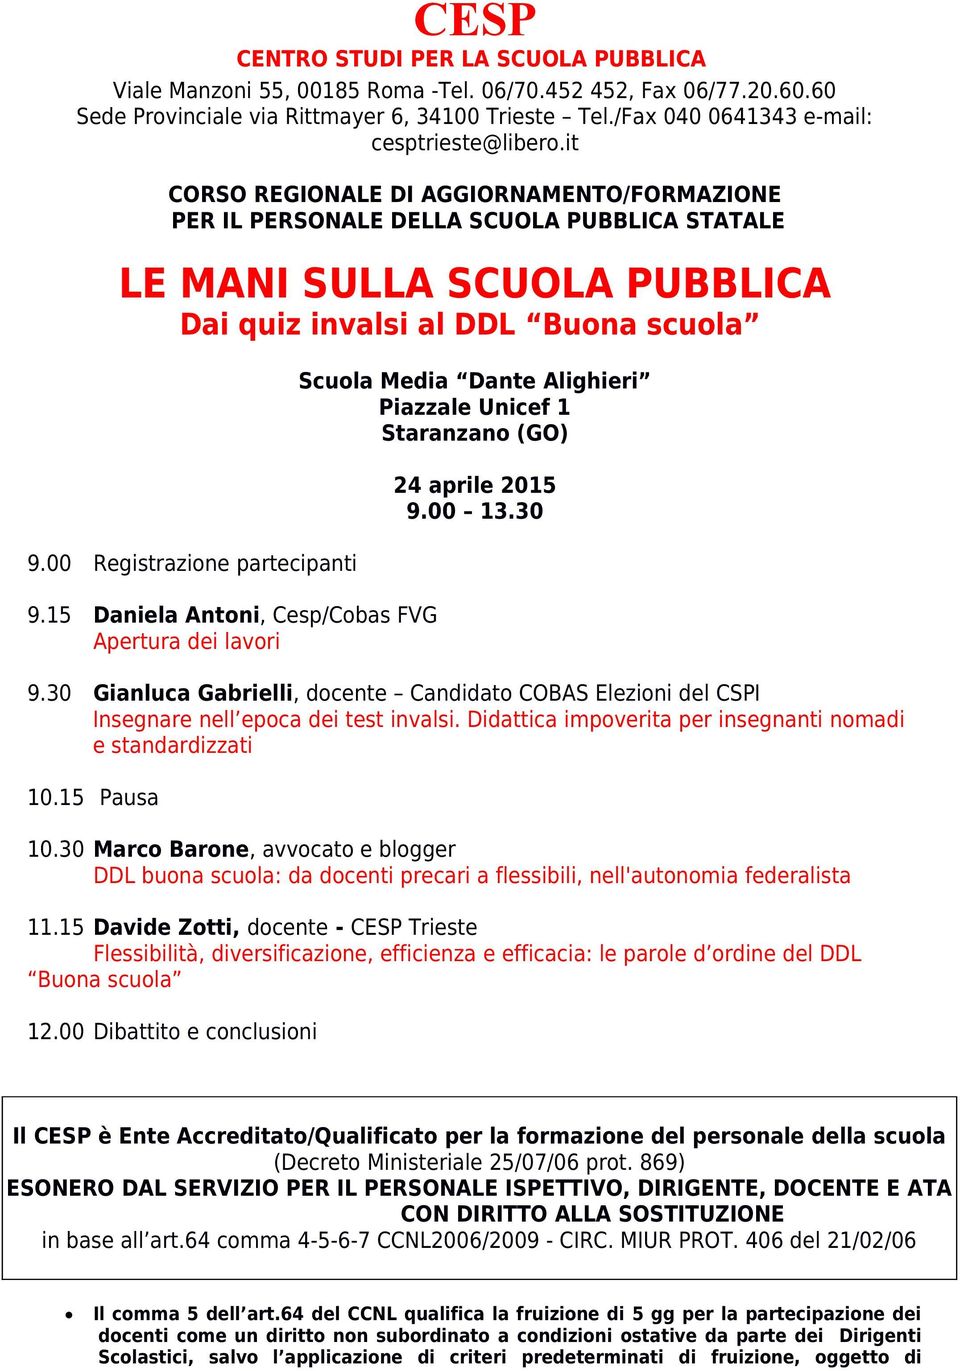 15 Daniela Antoni, Cesp/Cobas FVG Apertura dei lavori Scuola Media Dante Alighieri Piazzale Unicef 1 Staranzano (GO) 24 aprile 2015 9.